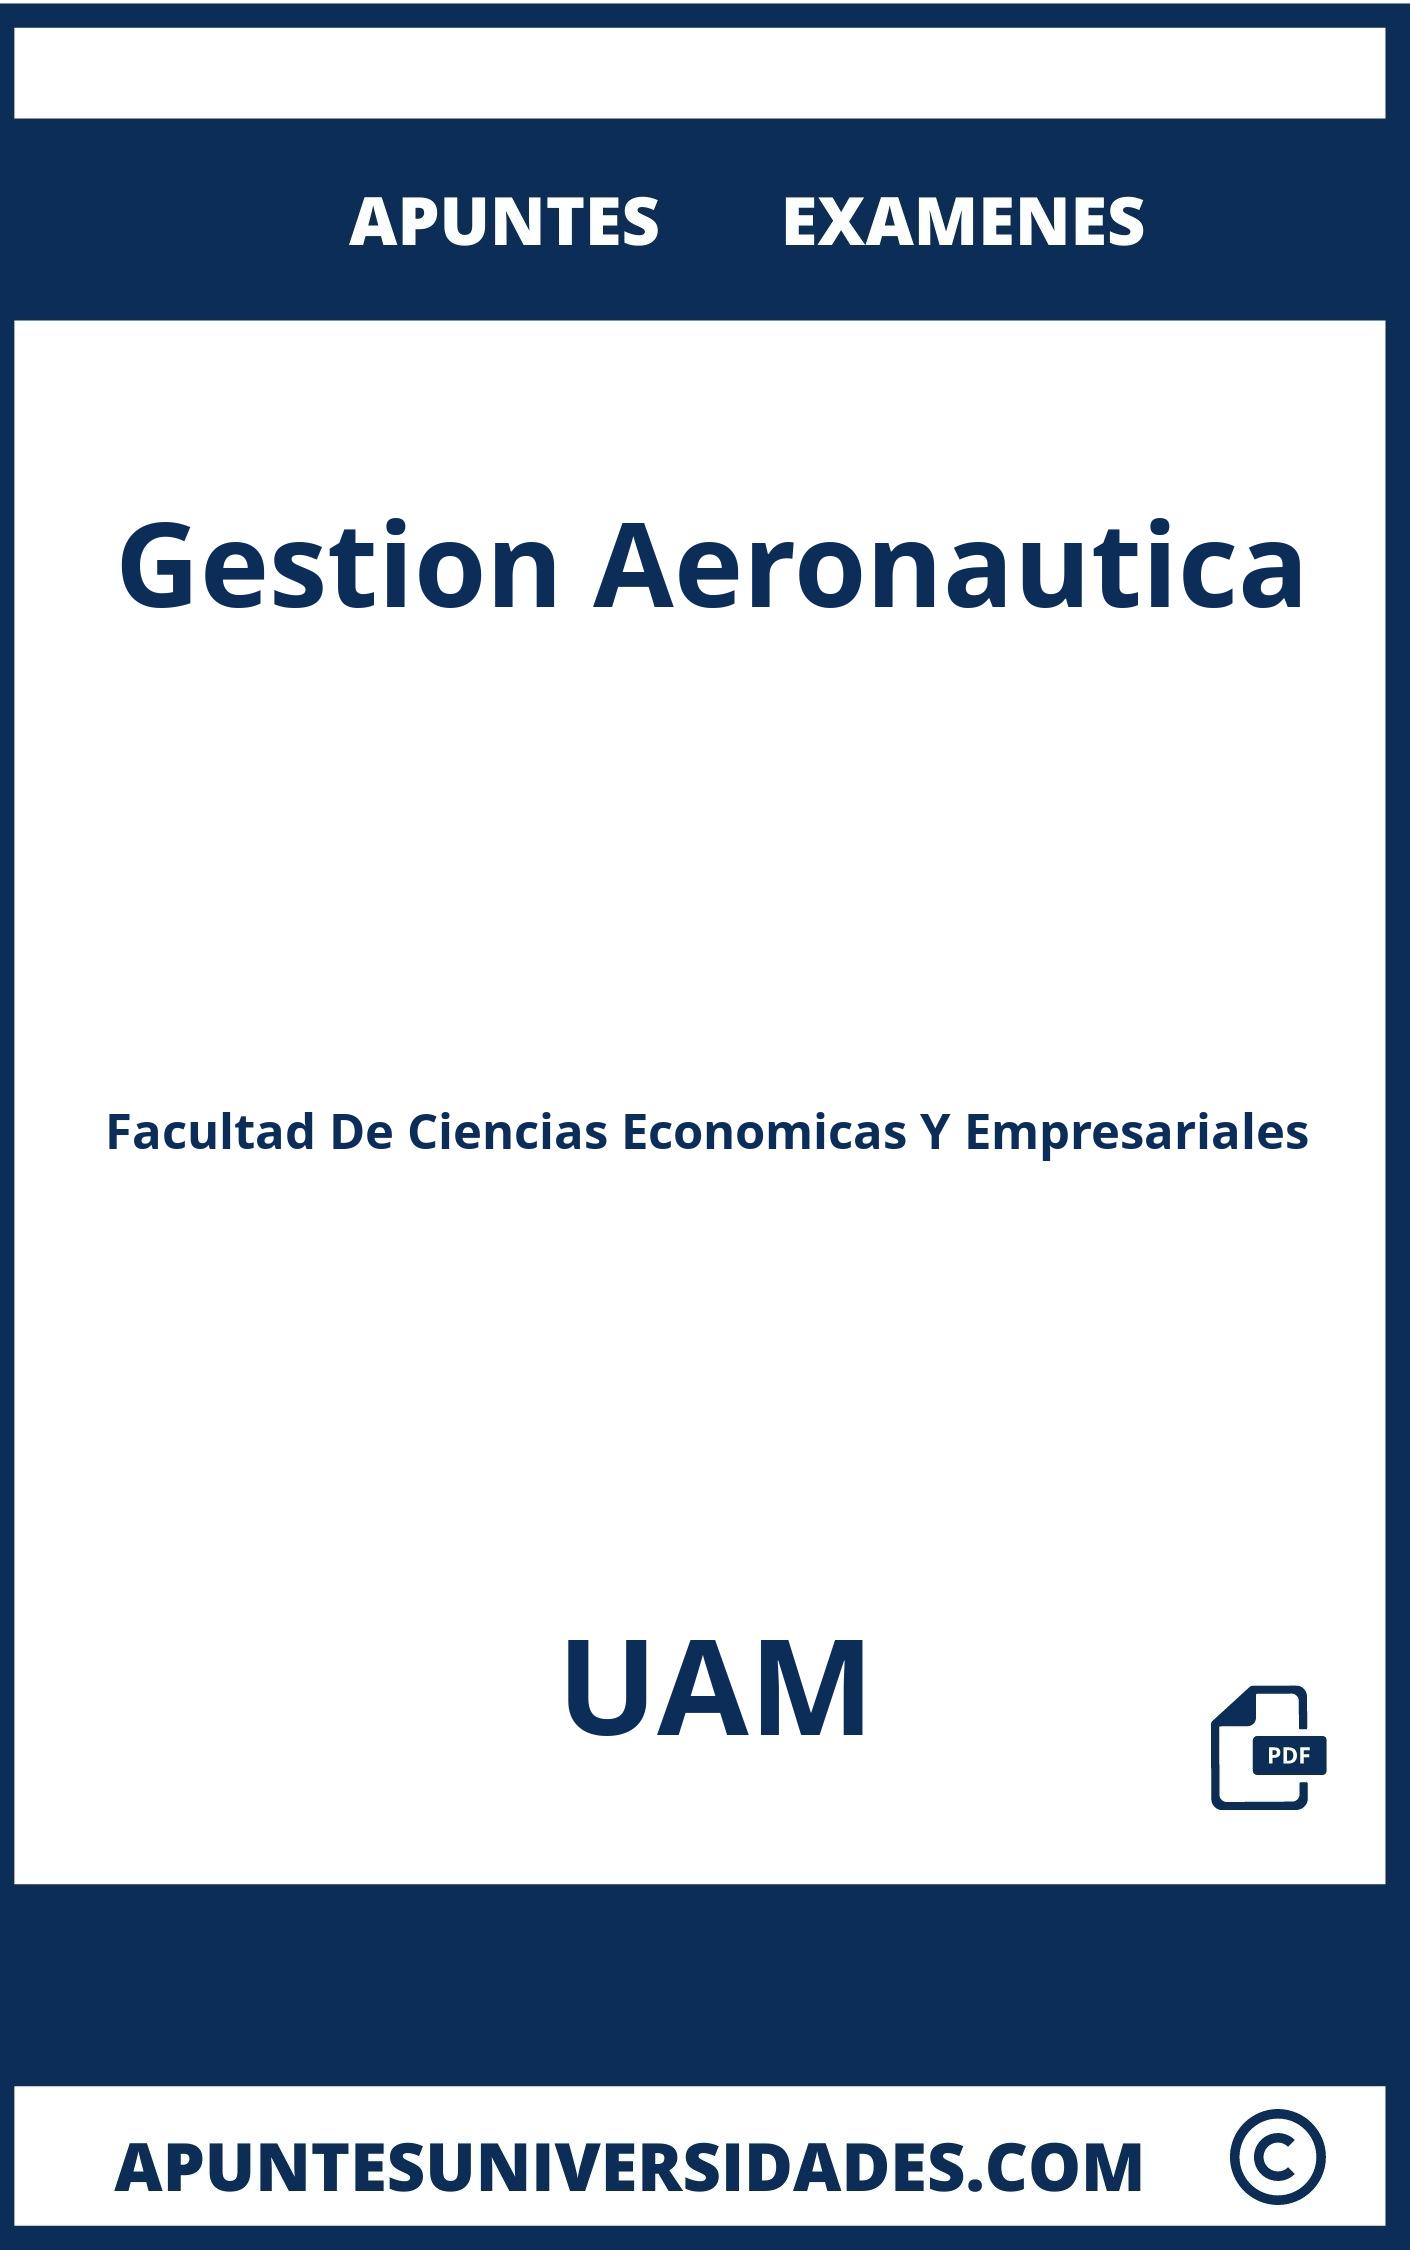 Examenes y Apuntes Gestion Aeronautica UAM